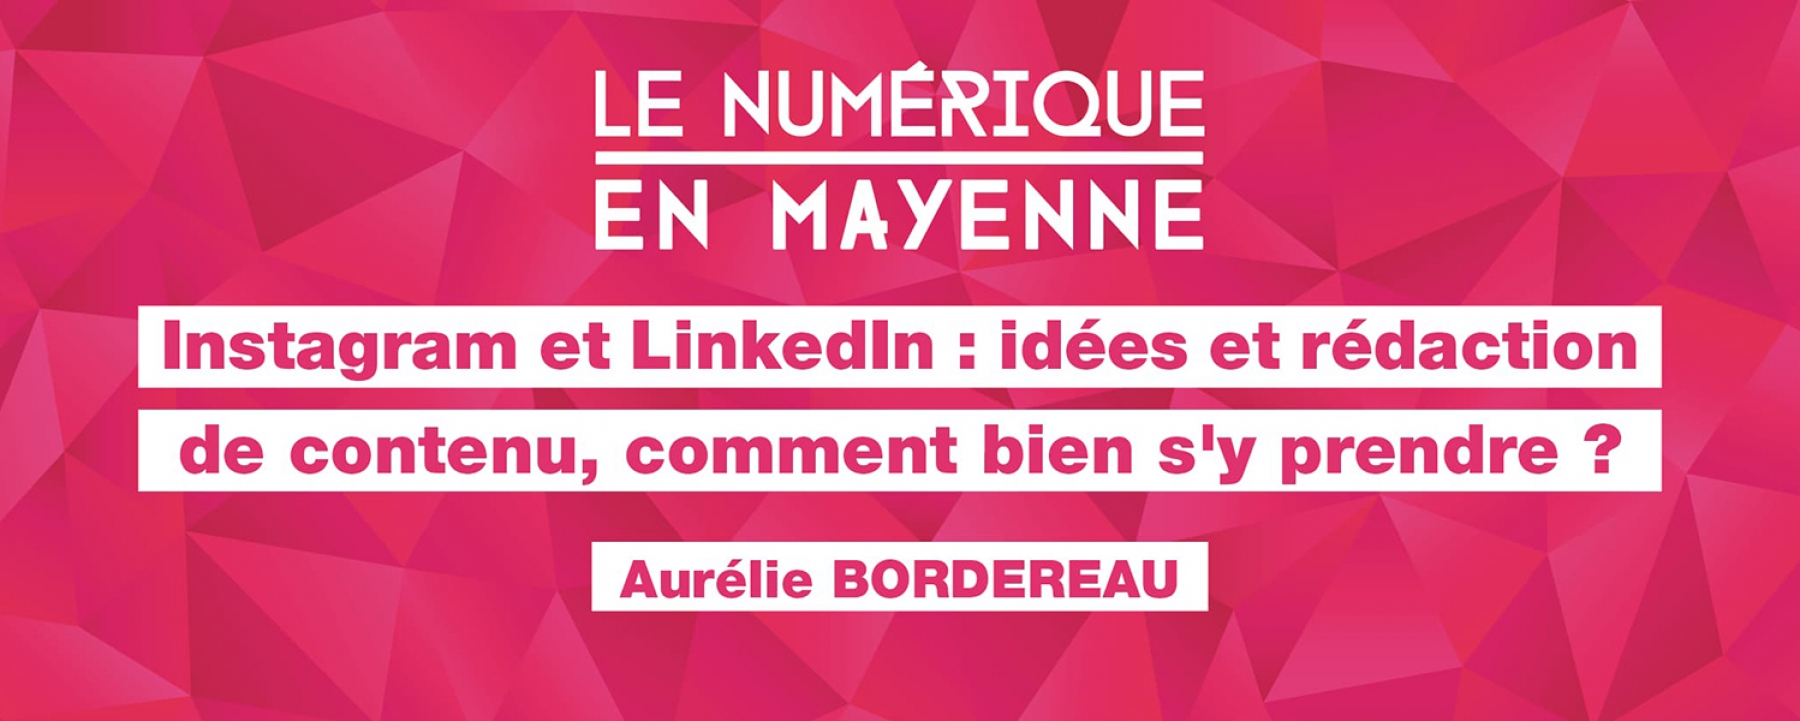 Instagram & LinkedIn : idées & rédaction de contenu, comment s'y prendre ? par Laval Mayenne Technopole le 22 avril 2021